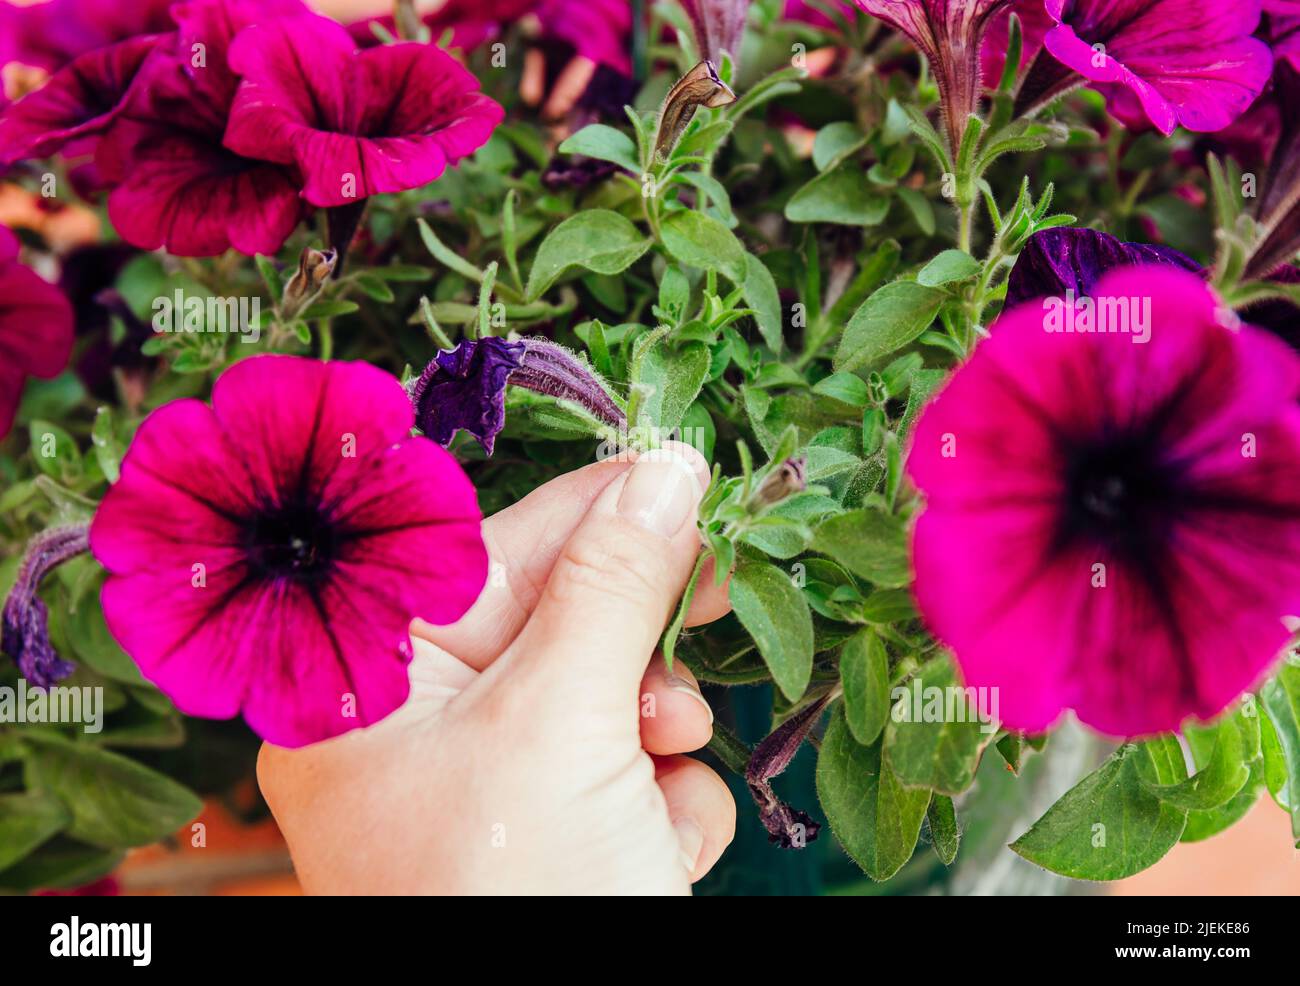 Pellizque o corte las flores de petunia antes de que comiencen a sembrar para fomentar el crecimiento. Concepto de hack de jardinería. Foto de stock